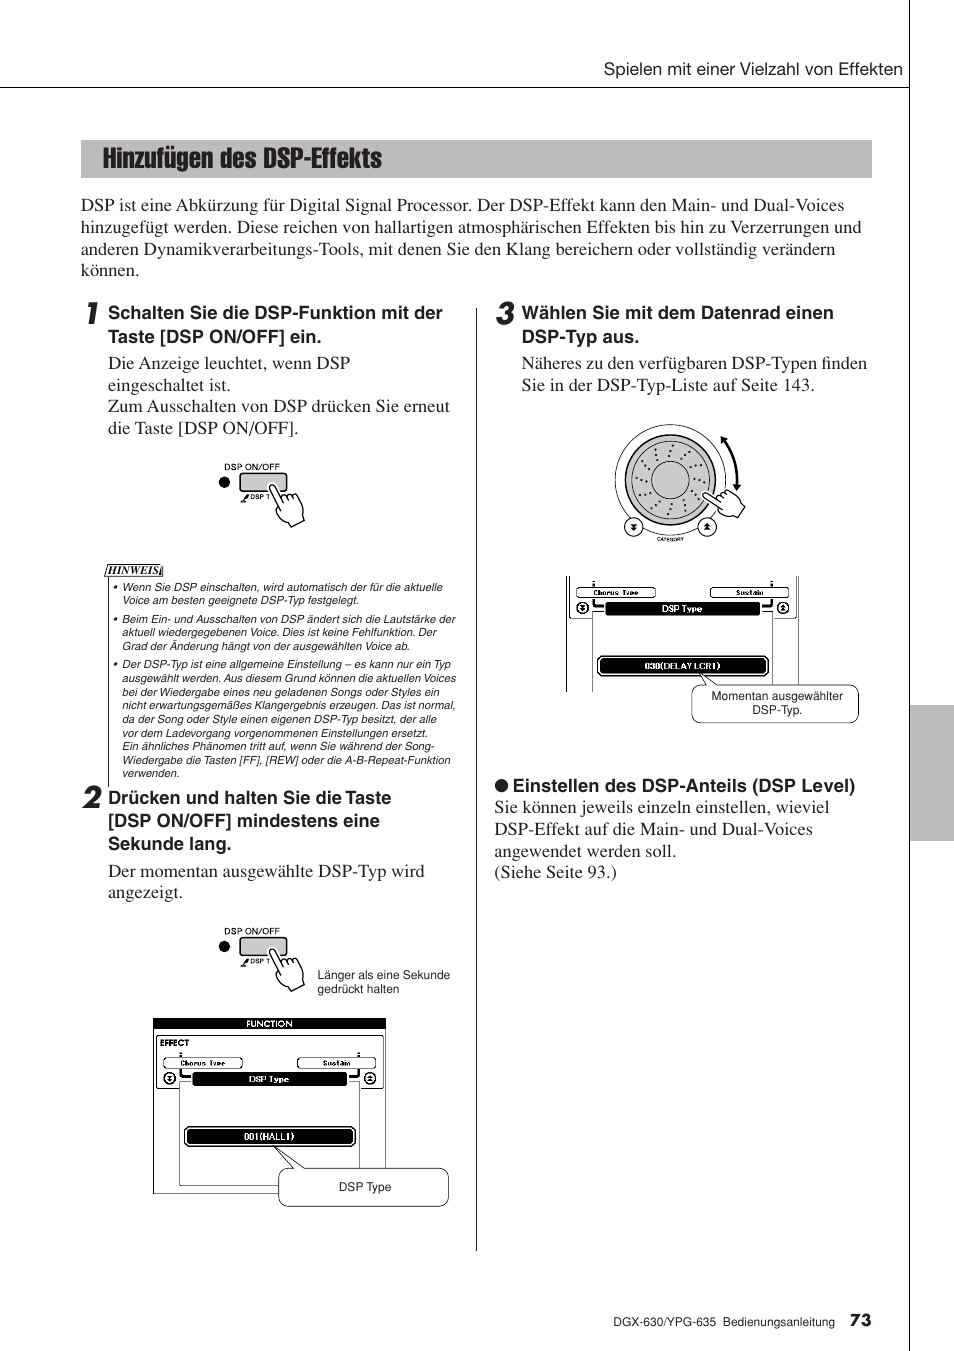 Hinzufügen des dsp-effekts, Seite 73 | Yamaha DGX-630 Benutzerhandbuch | Seite 73 / 160